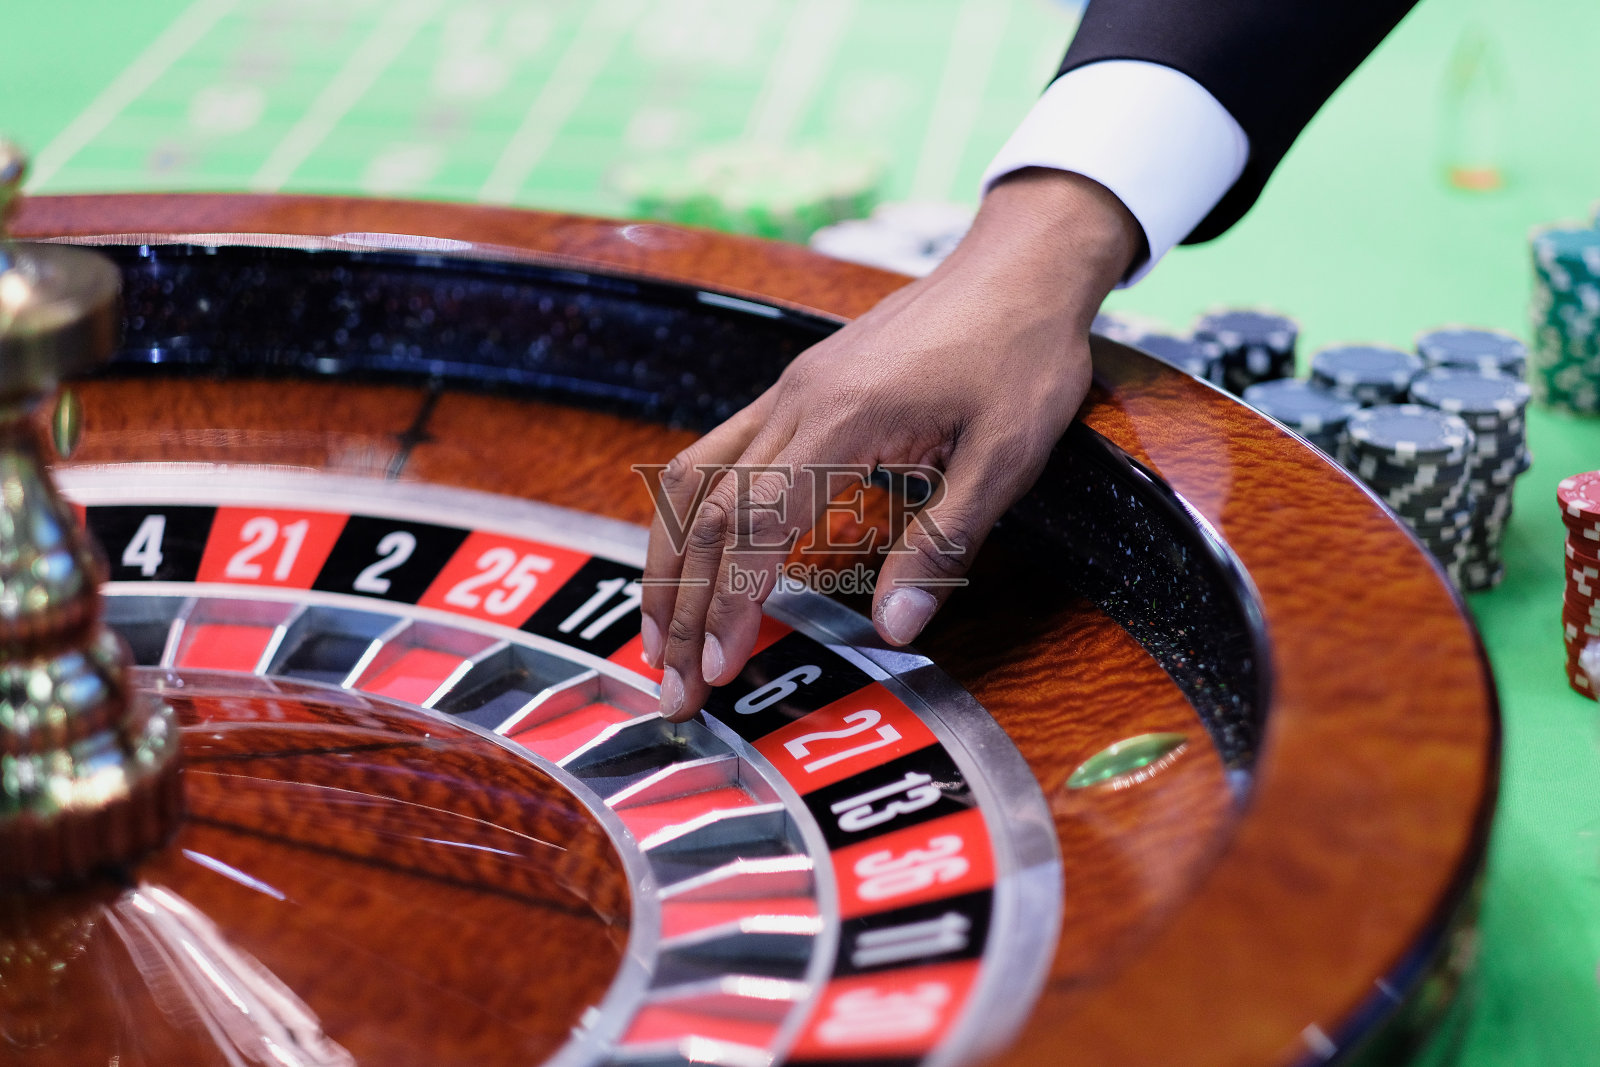 轮盘赌赌场里的轮盘赌游戏照片摄影图片